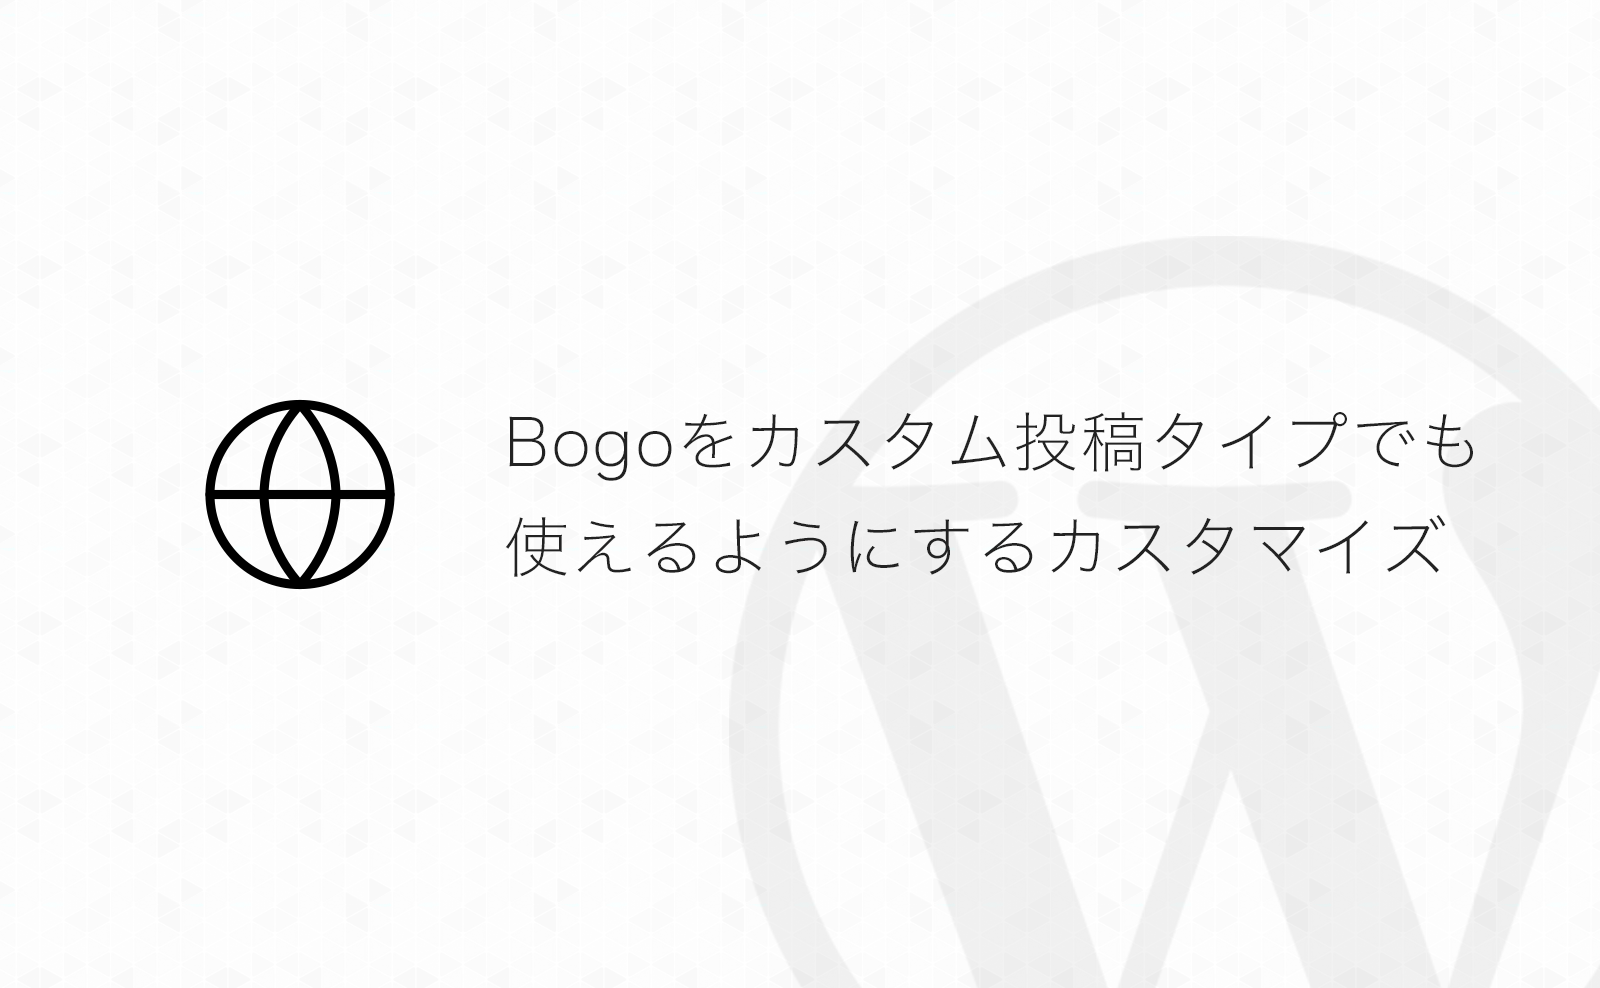 【WordPress】多言語化プラグイン「Bogo」でカスタム投稿タイプにも言語追加出来るようにする方法